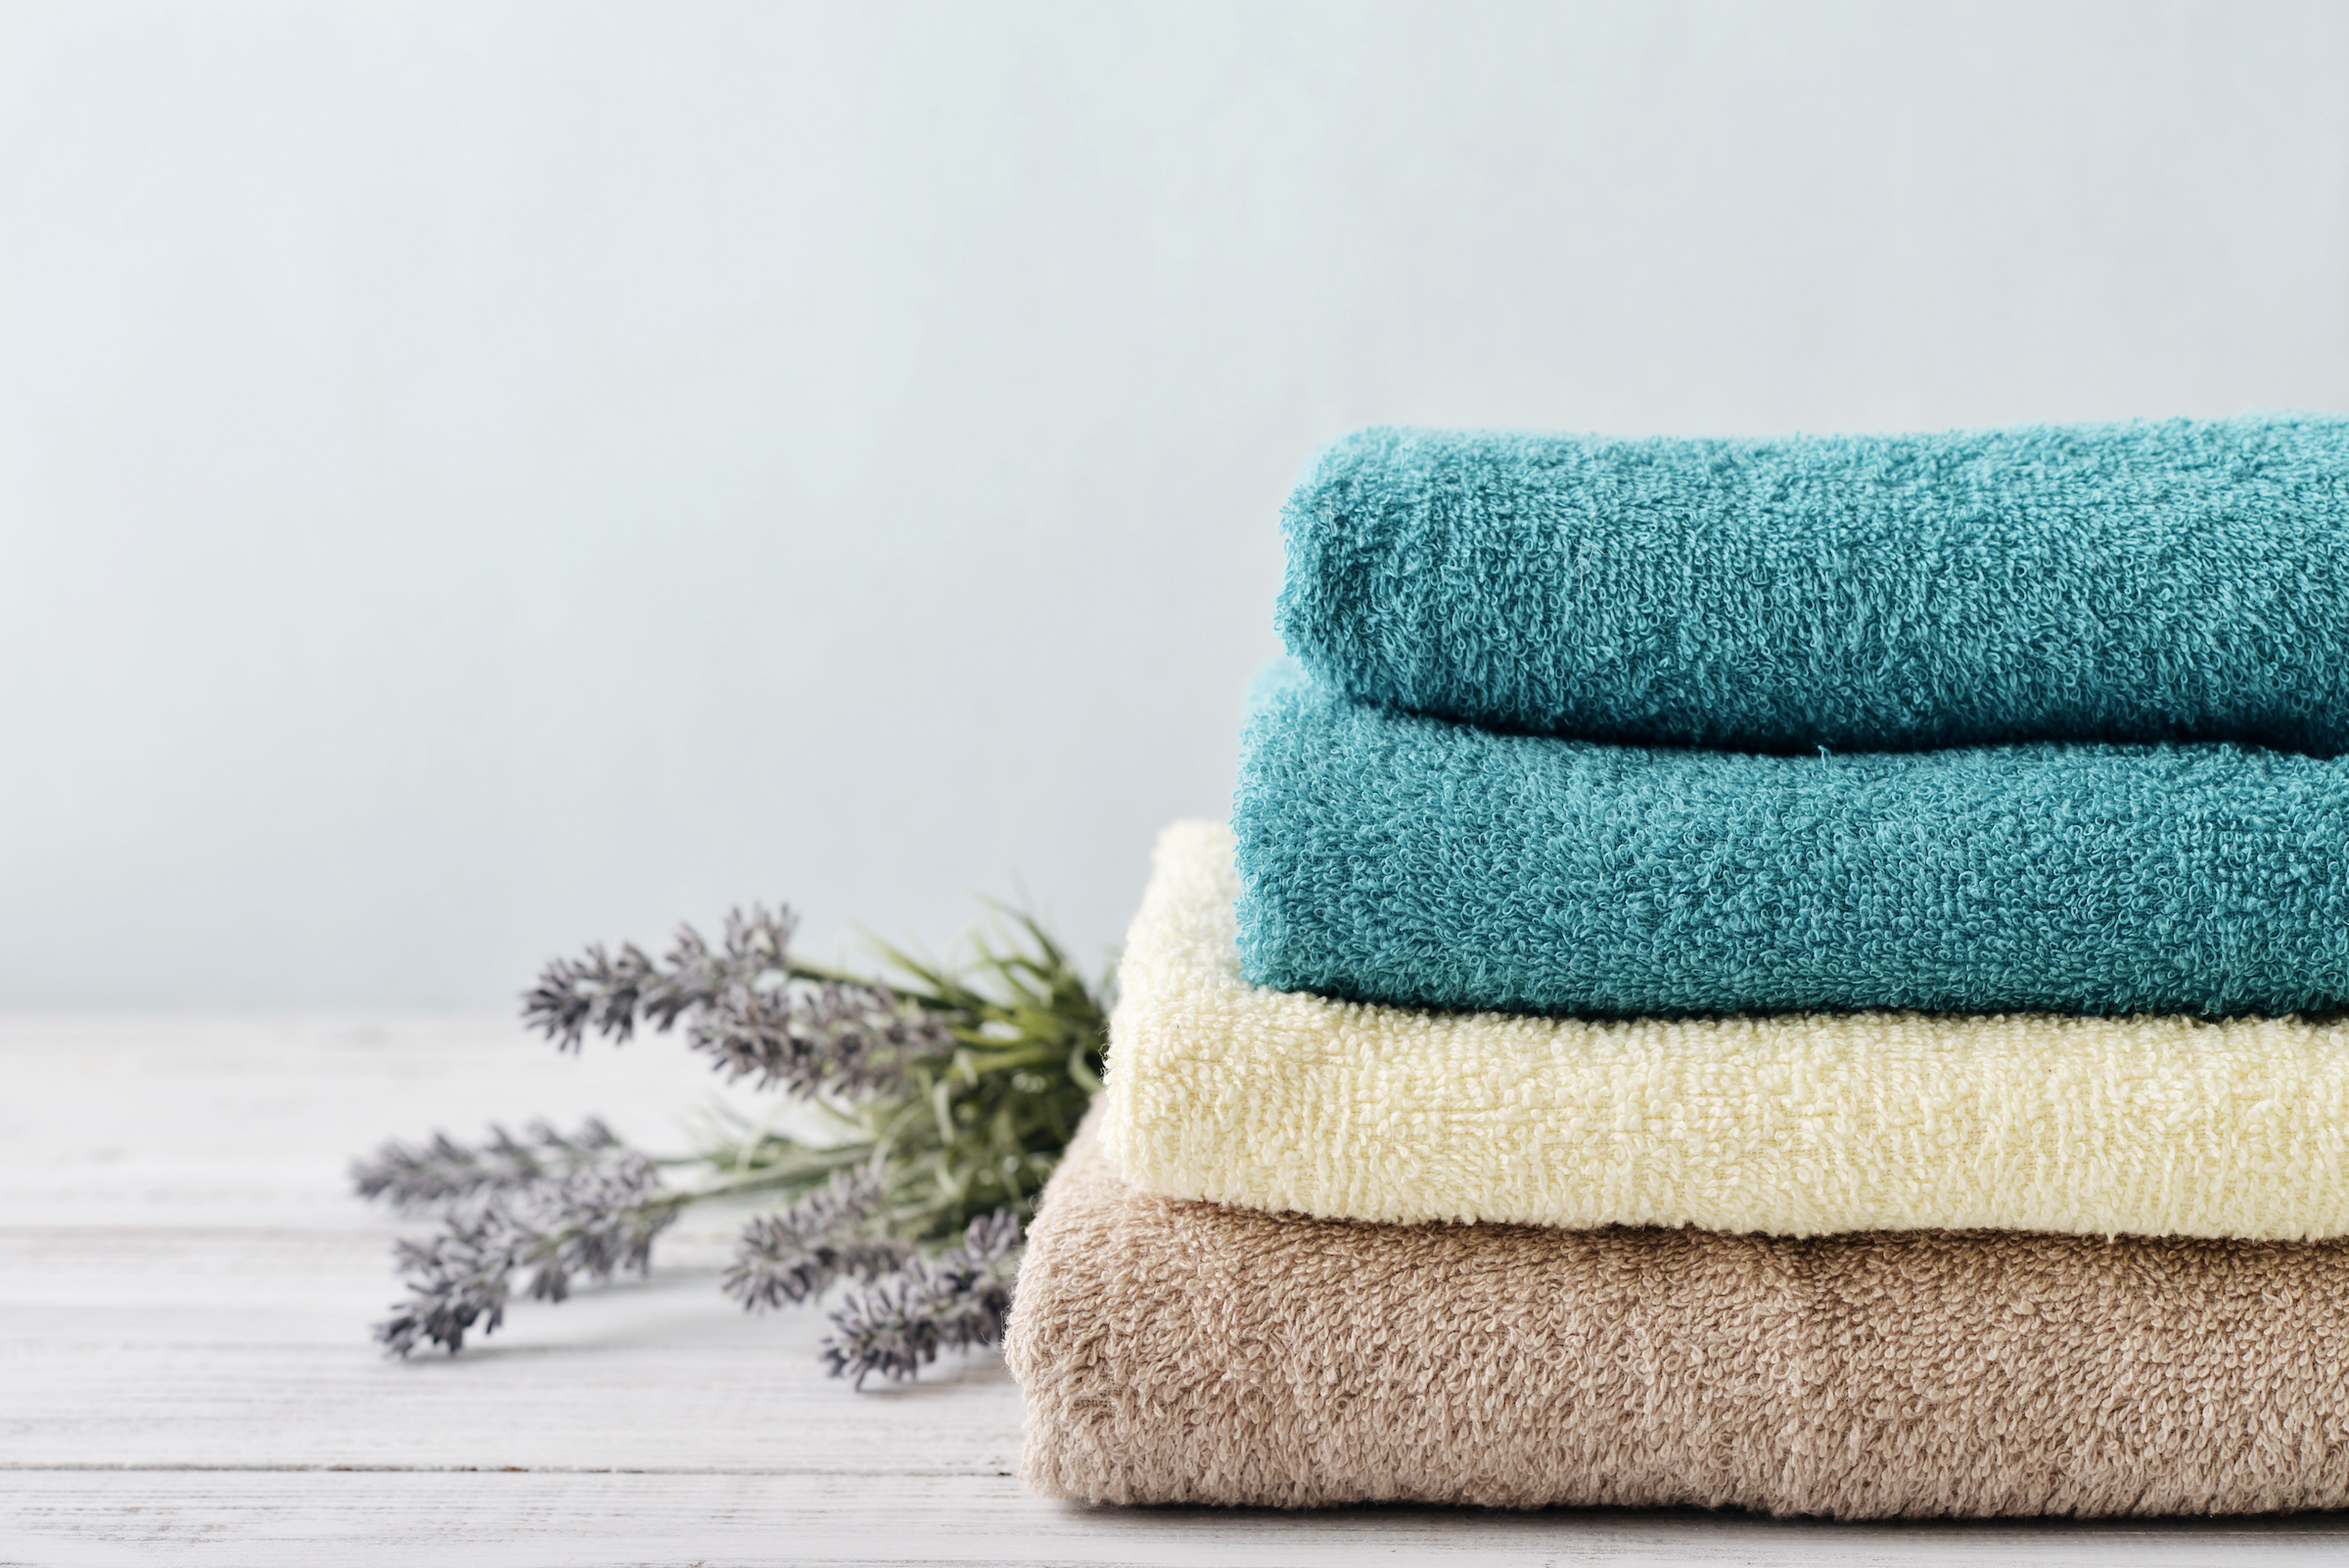 Trucos secretos para mantener tus toallas suaves y frescas como el primer día | Hoy